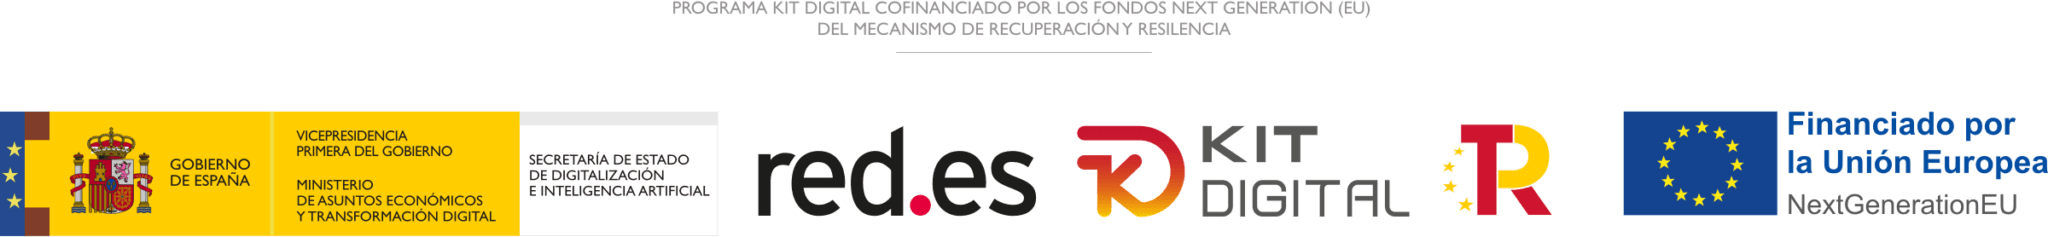 Programa Kit Digital cofinanciado por los fondos europeos Next Generation (EU) del mecanismo de recuperación y resilencia